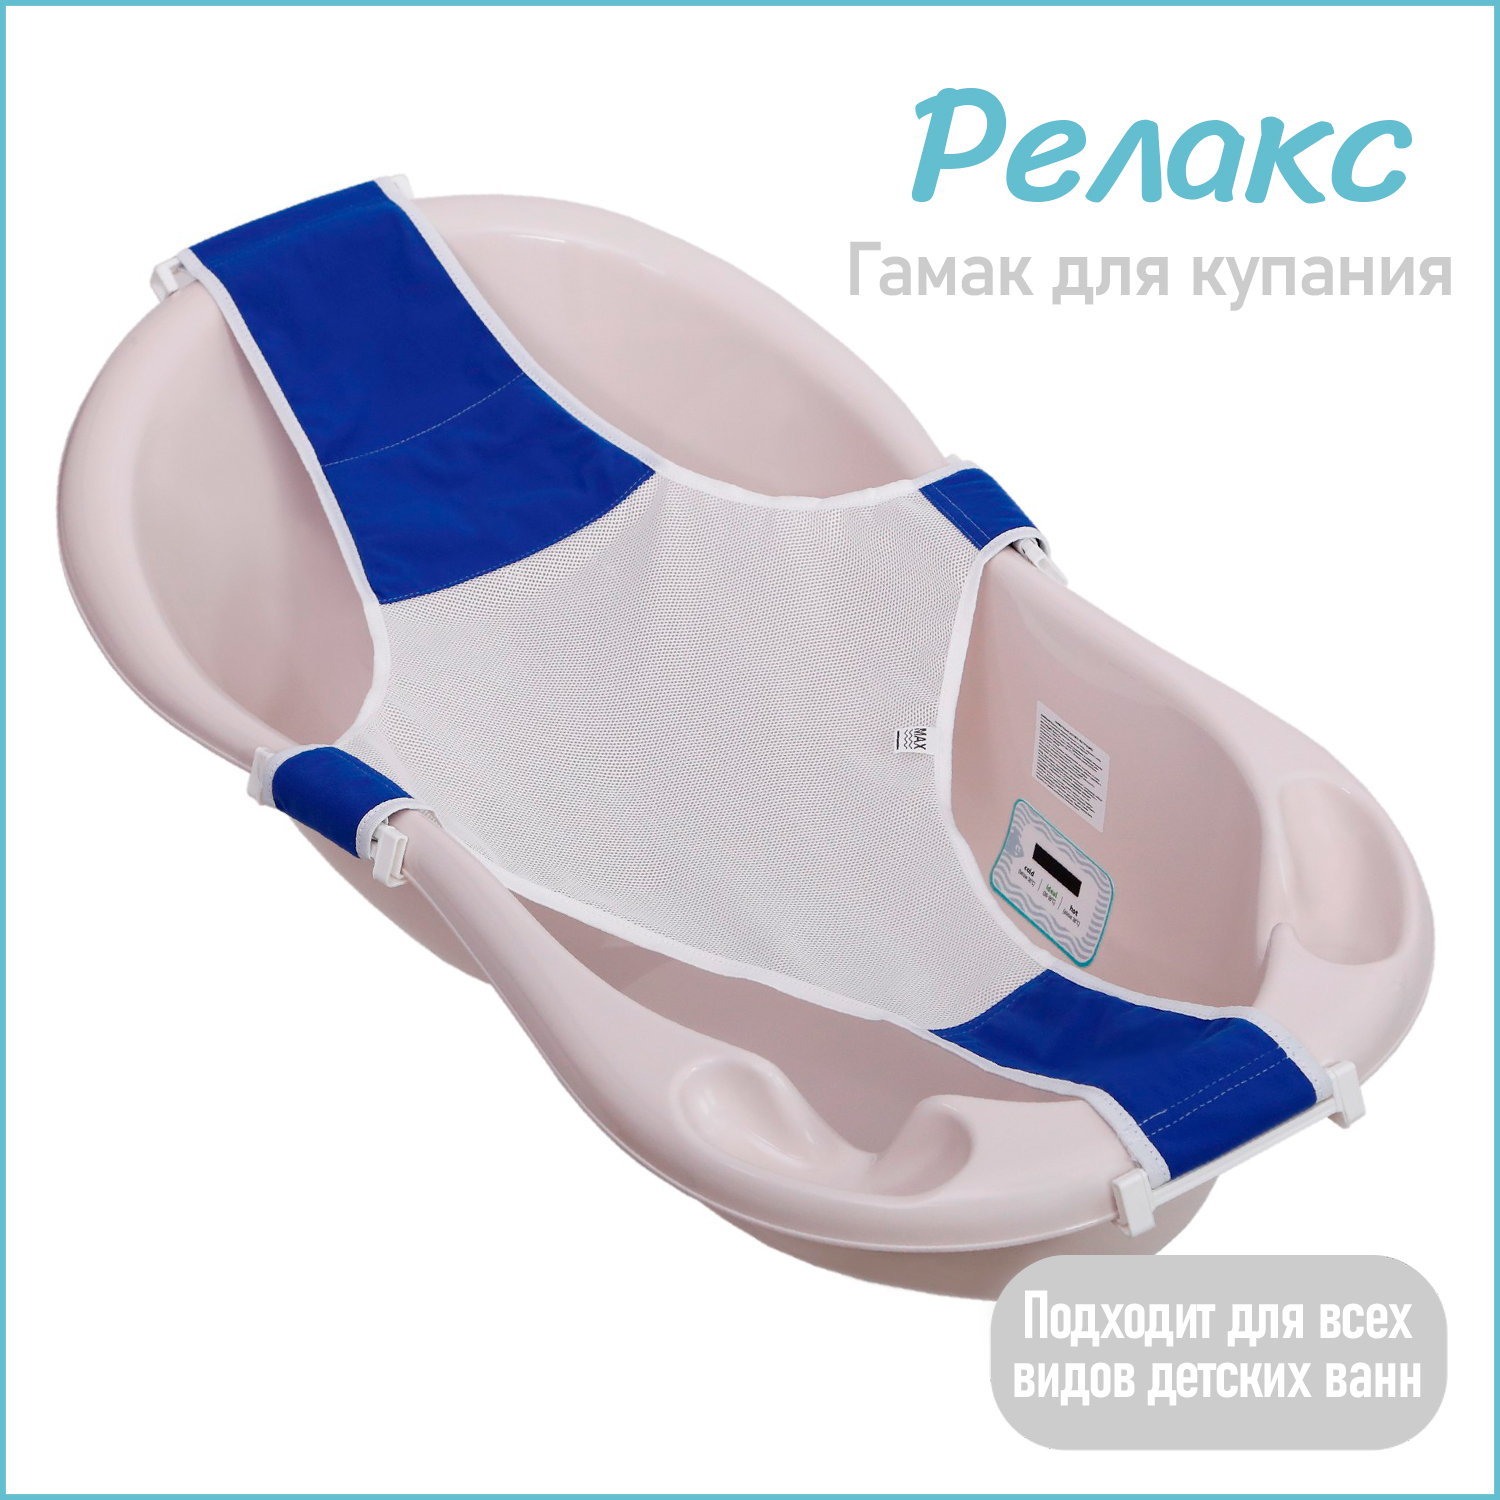 Горка гамак для купания новорожденных KidWick для детской ванночки Relax, синий, K0243000 гамак для йоги midzumi yoga fly 20140 синий голубой